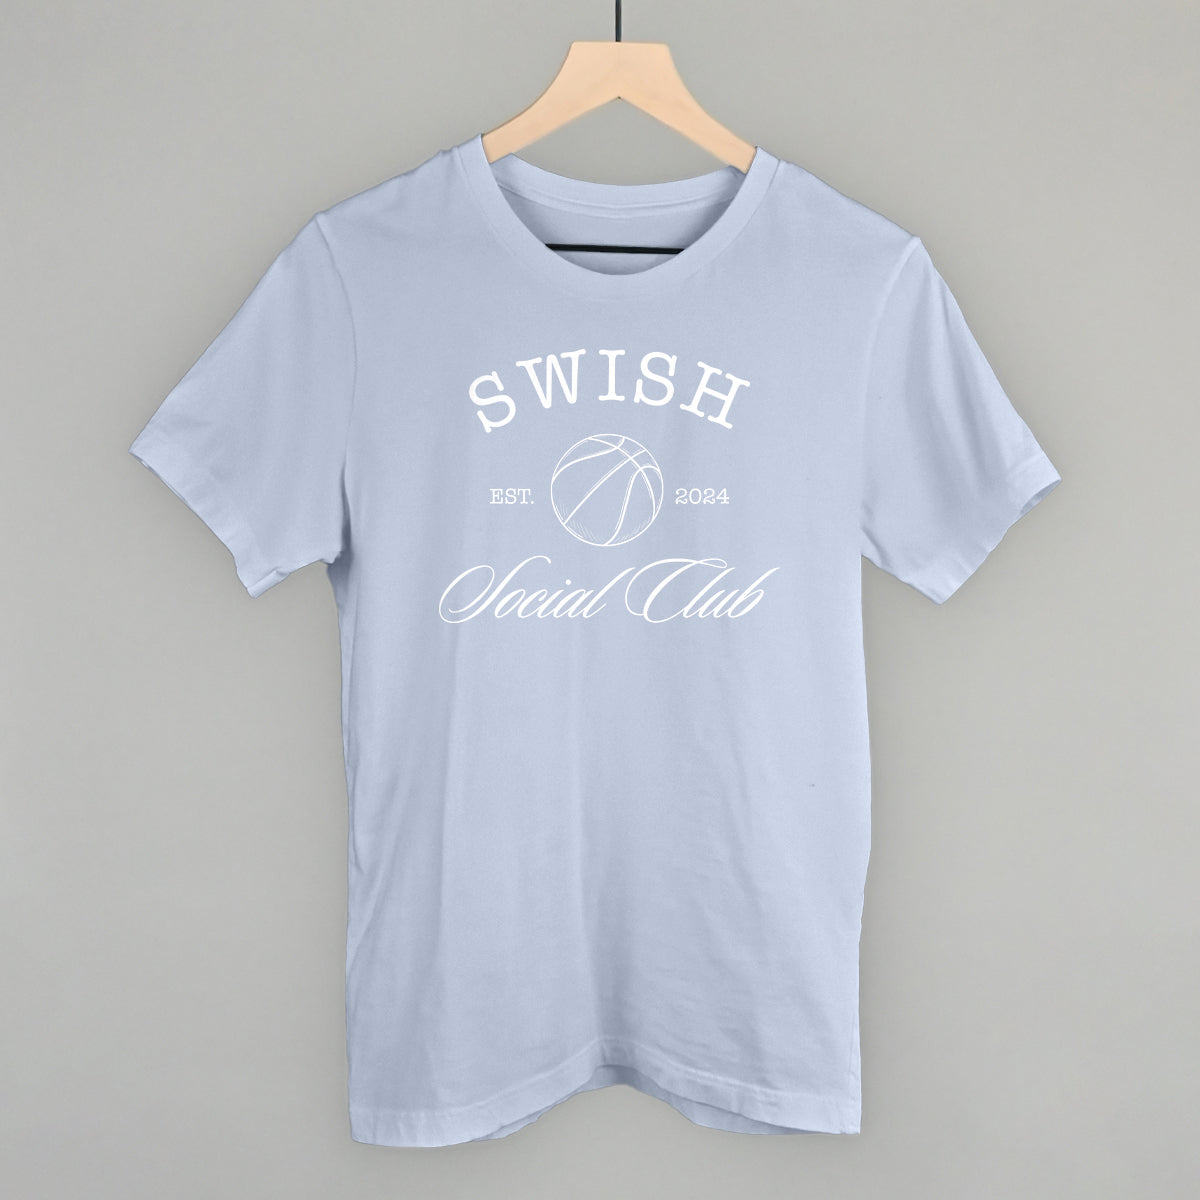 Swish Social Club